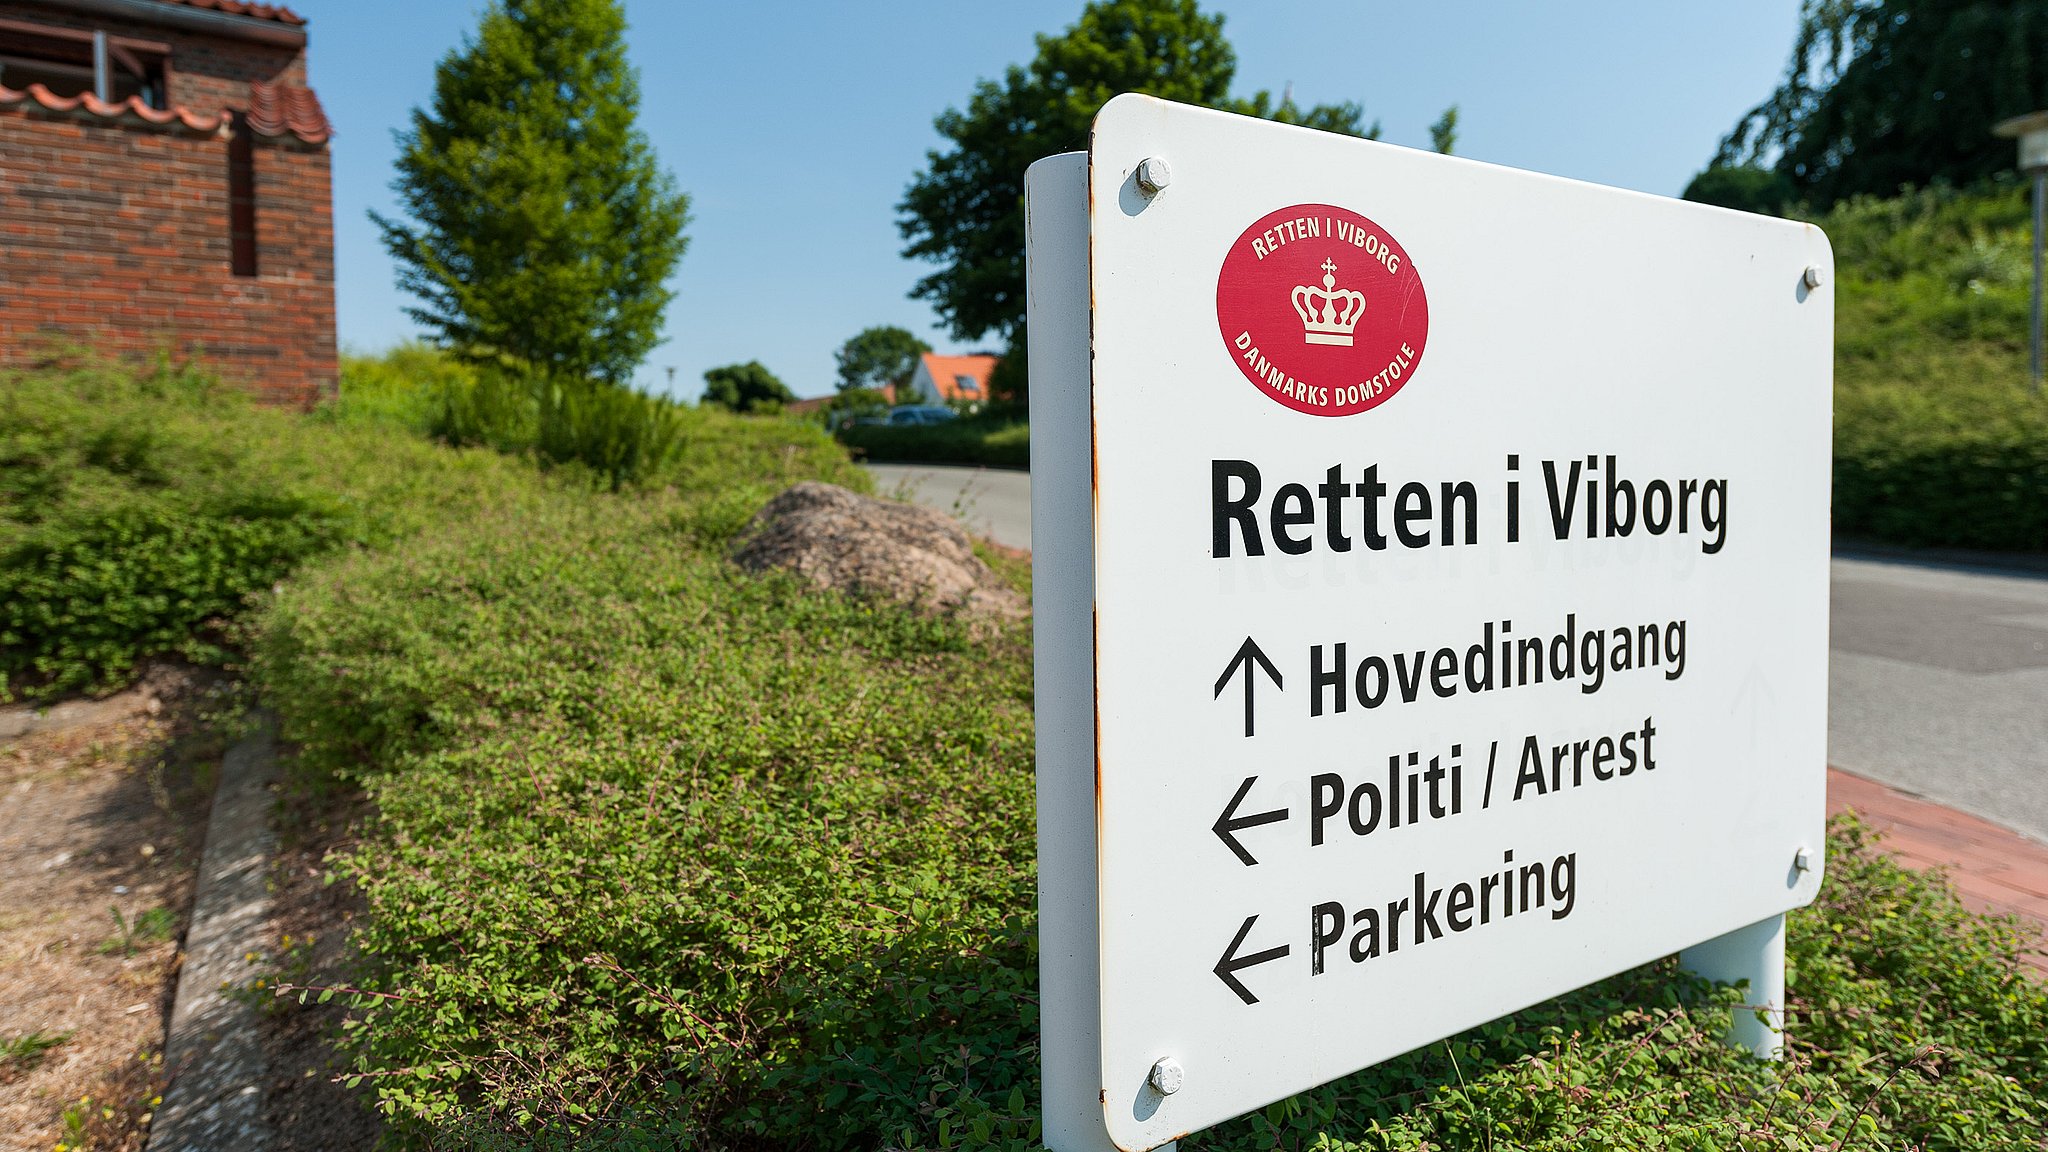 se tv identifikation Arv Fængslet efter fund af hårde stoffer i Viborg | TV MIDTVEST